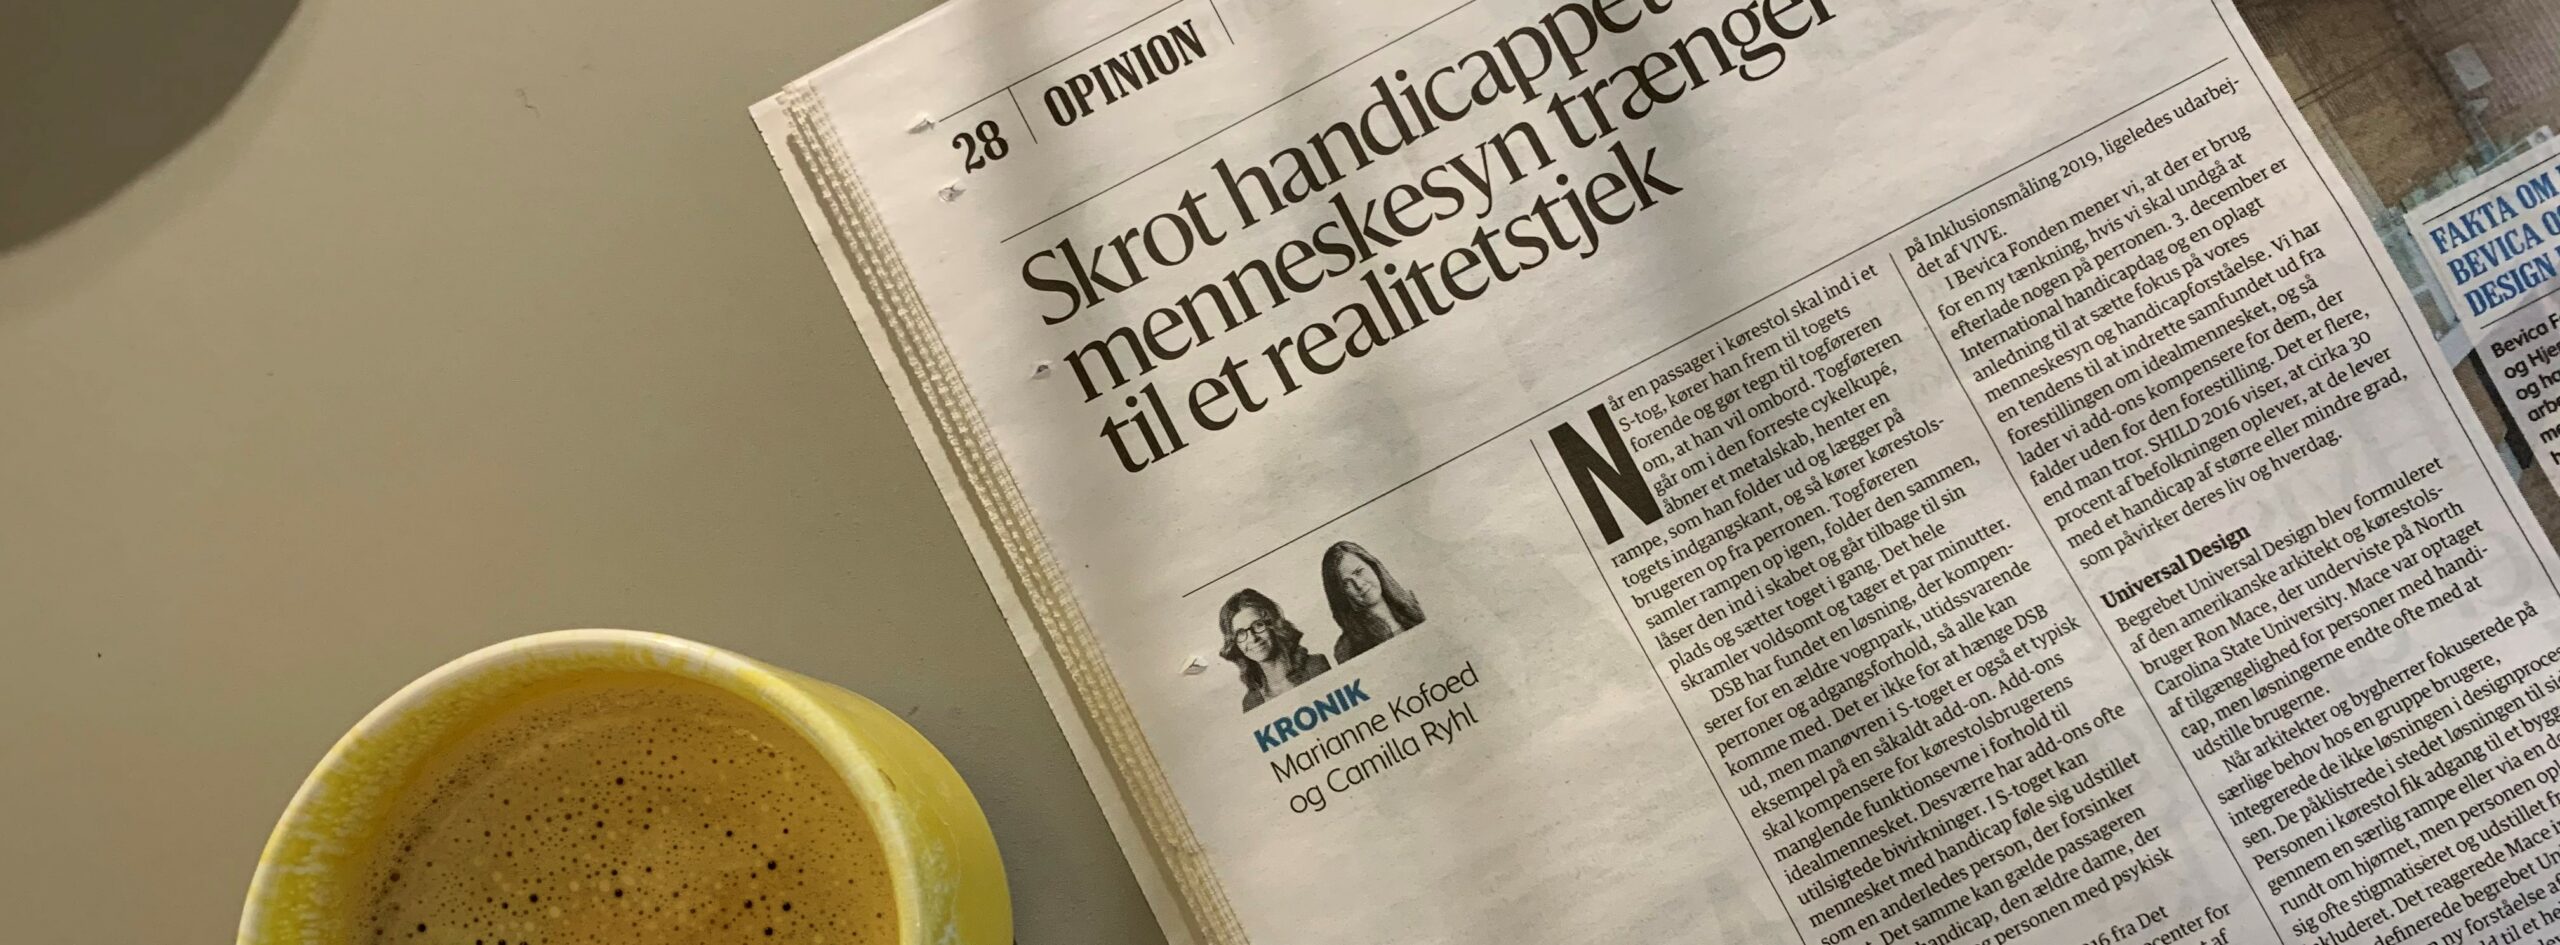 En gul kaffekop og Berlinske tidende ligger på et bord. Avisen er slået op på en kronik med Titlen "Skrot handicappet - vores menneskesyn trænger til et realitetstjek"